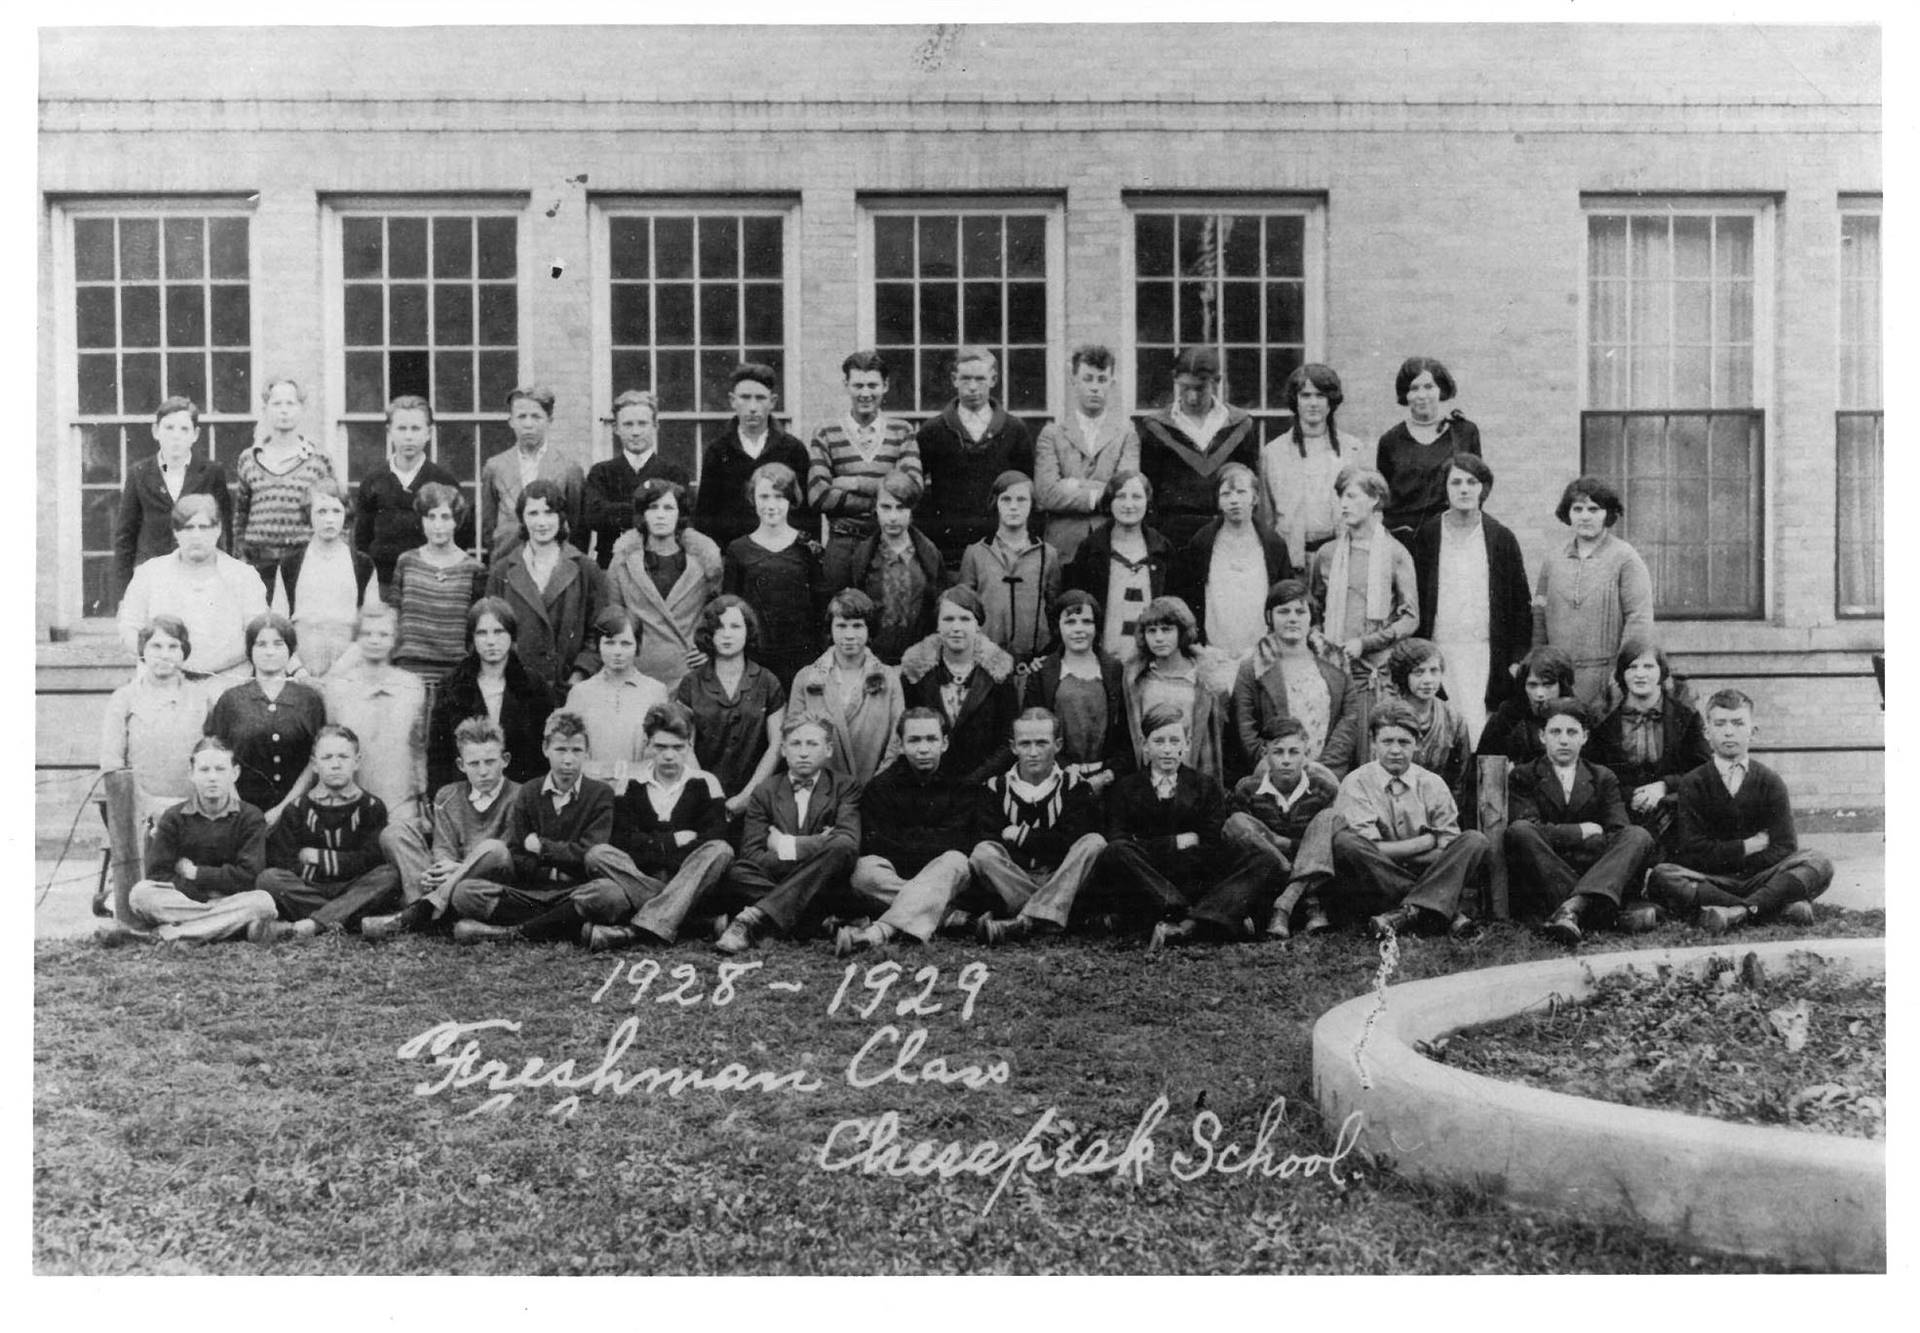 Chesapeake High School Freshmen Class 1929